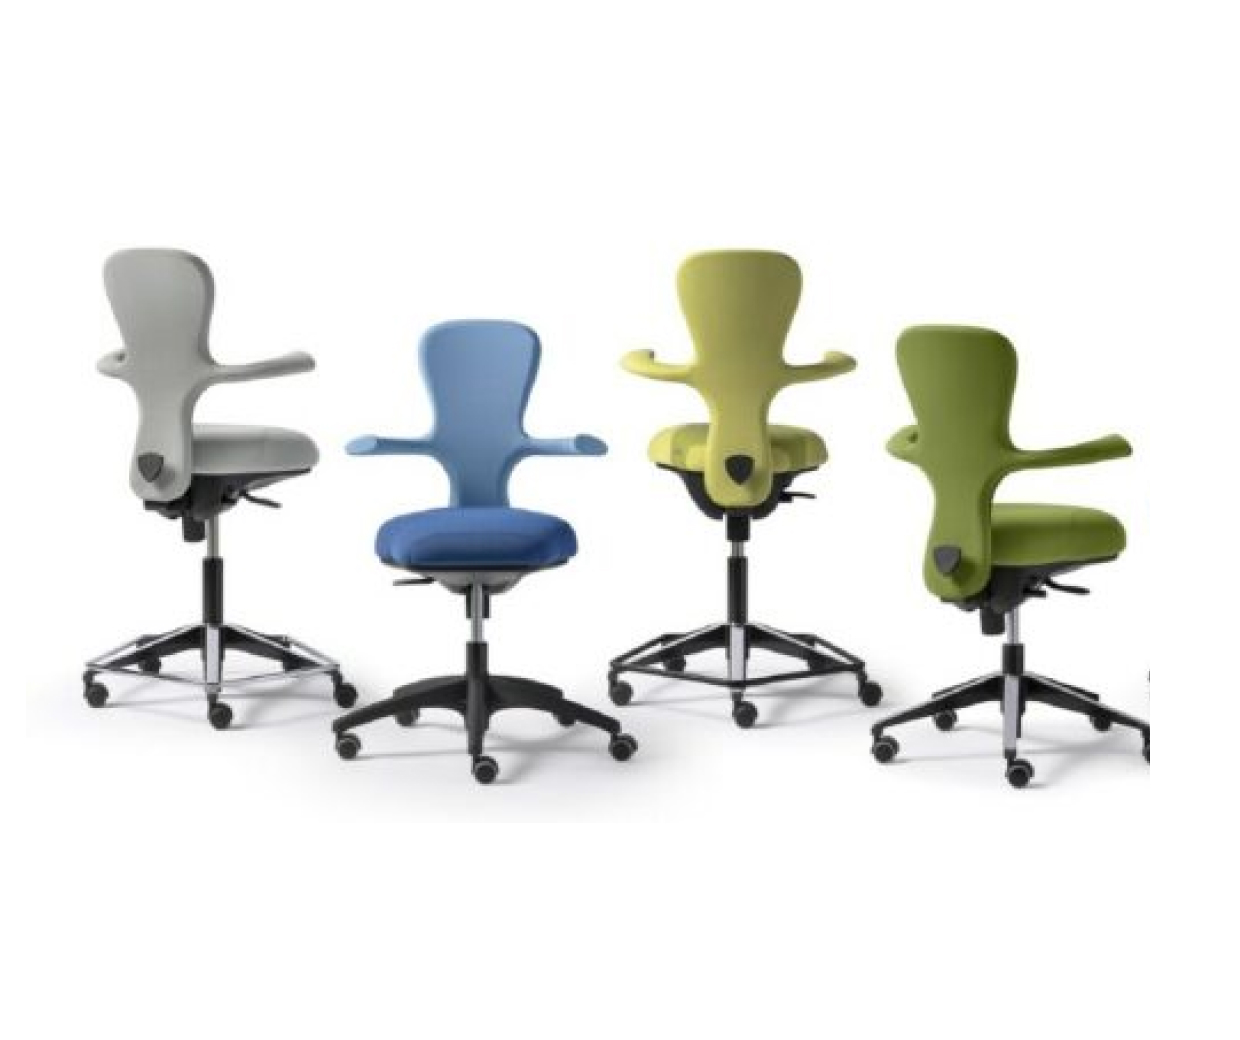 Nouveau siège ergonomique pour bureaux réglables en hauteur avec positions adpatées et confort.
Différentes hauteurs et assise possibles.